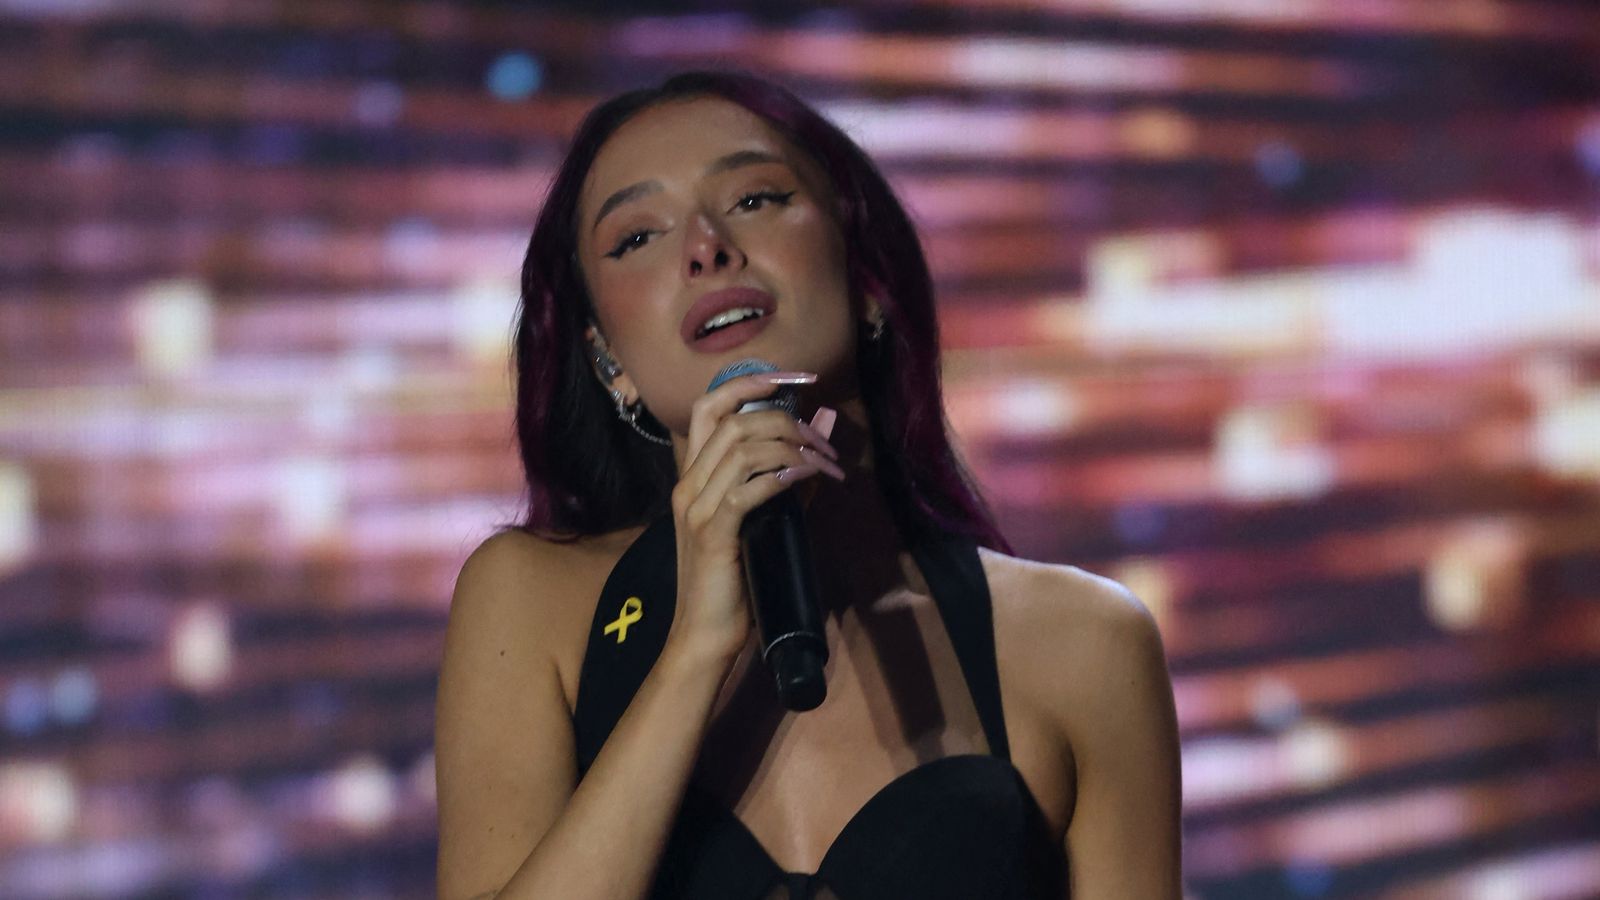 Israel diizinkan berkompetisi di Eurovision setelah lirik lagu kontroversial diubah |  Berita seni dan seni